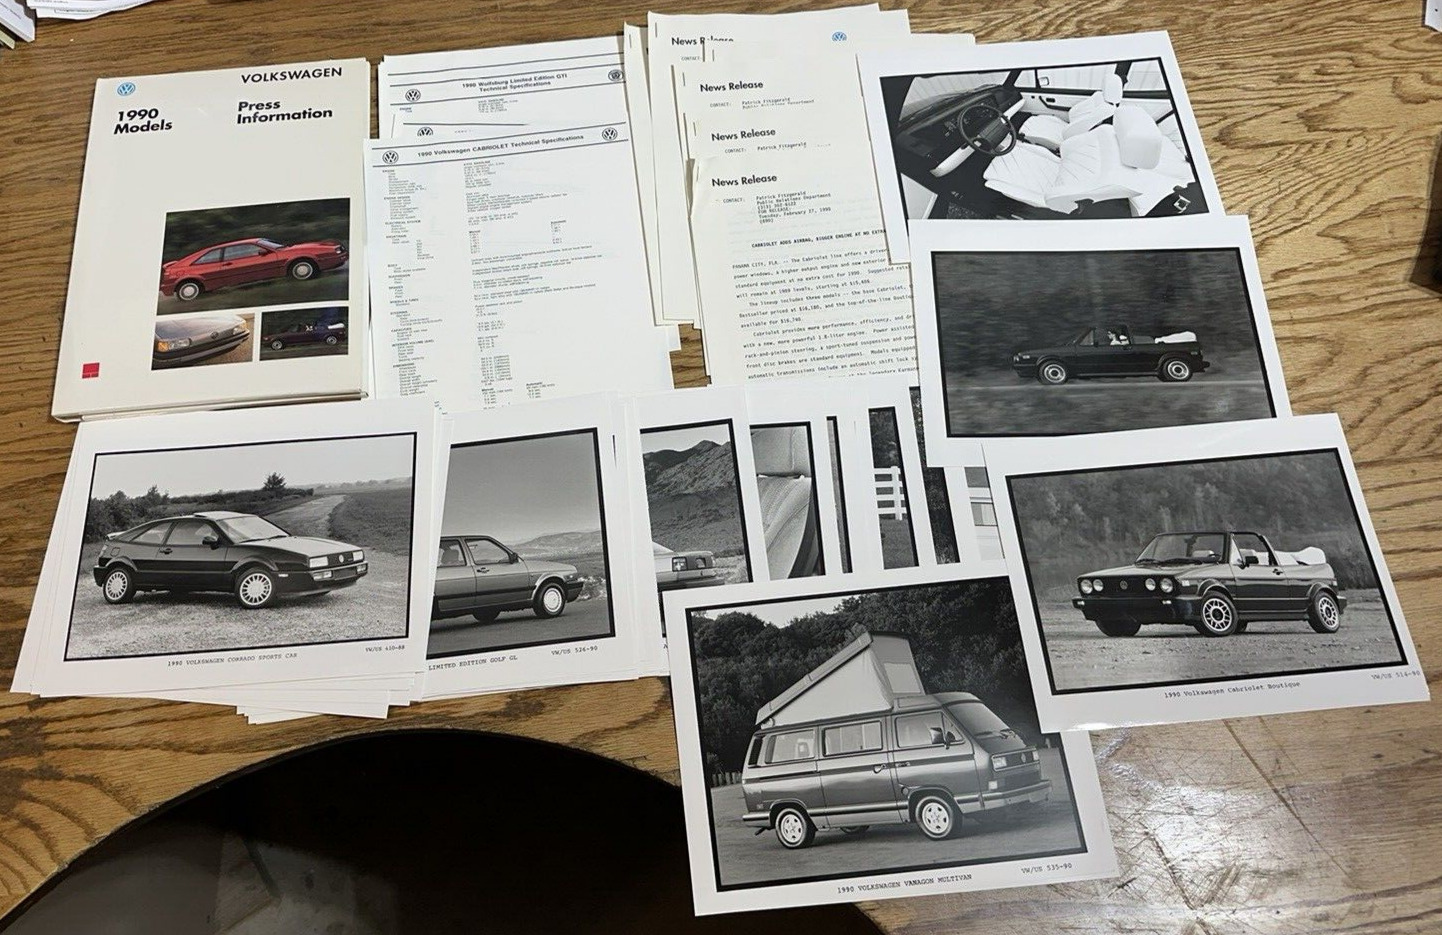 Original 1990 Volkswagen Full Line Media Information Press Kit